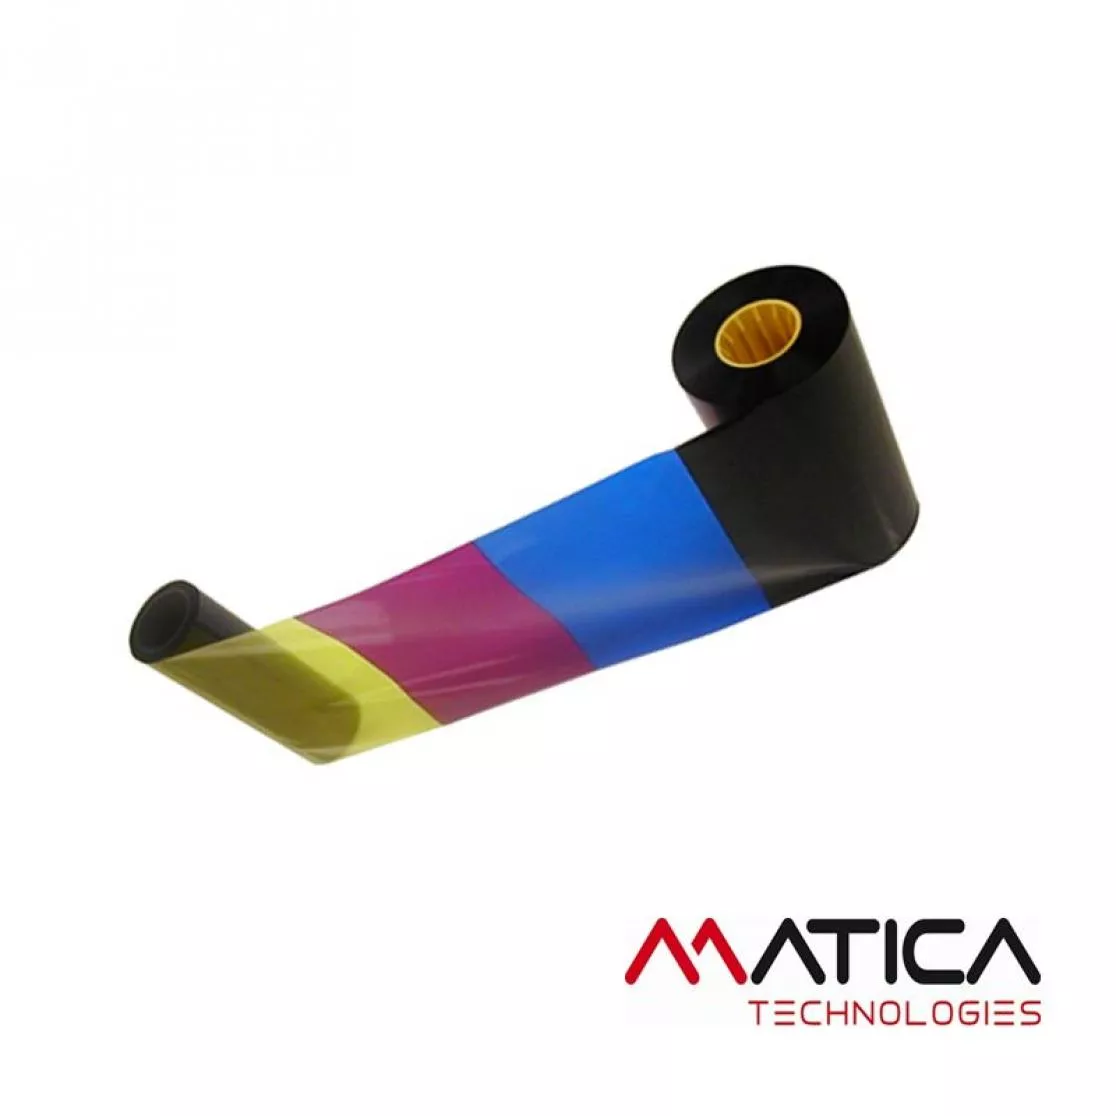 Ribbon colorful for card printer Matica Espresso II